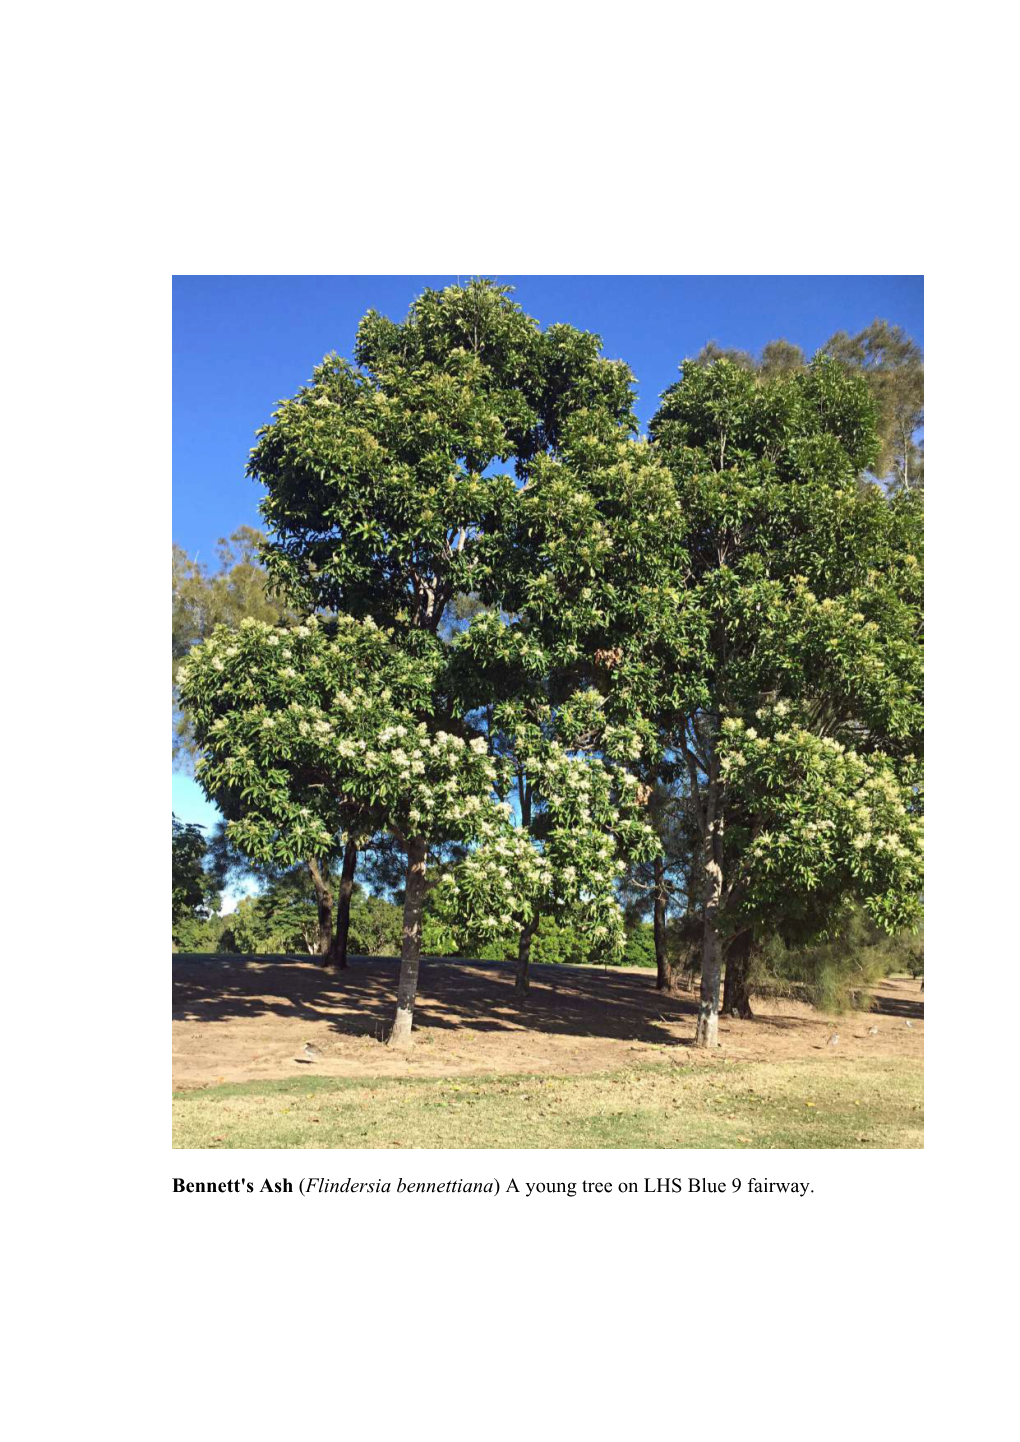 Bennett's Ash (Flindersia Bennettiana) a Young Tree on LHS Blue 9 Fairway